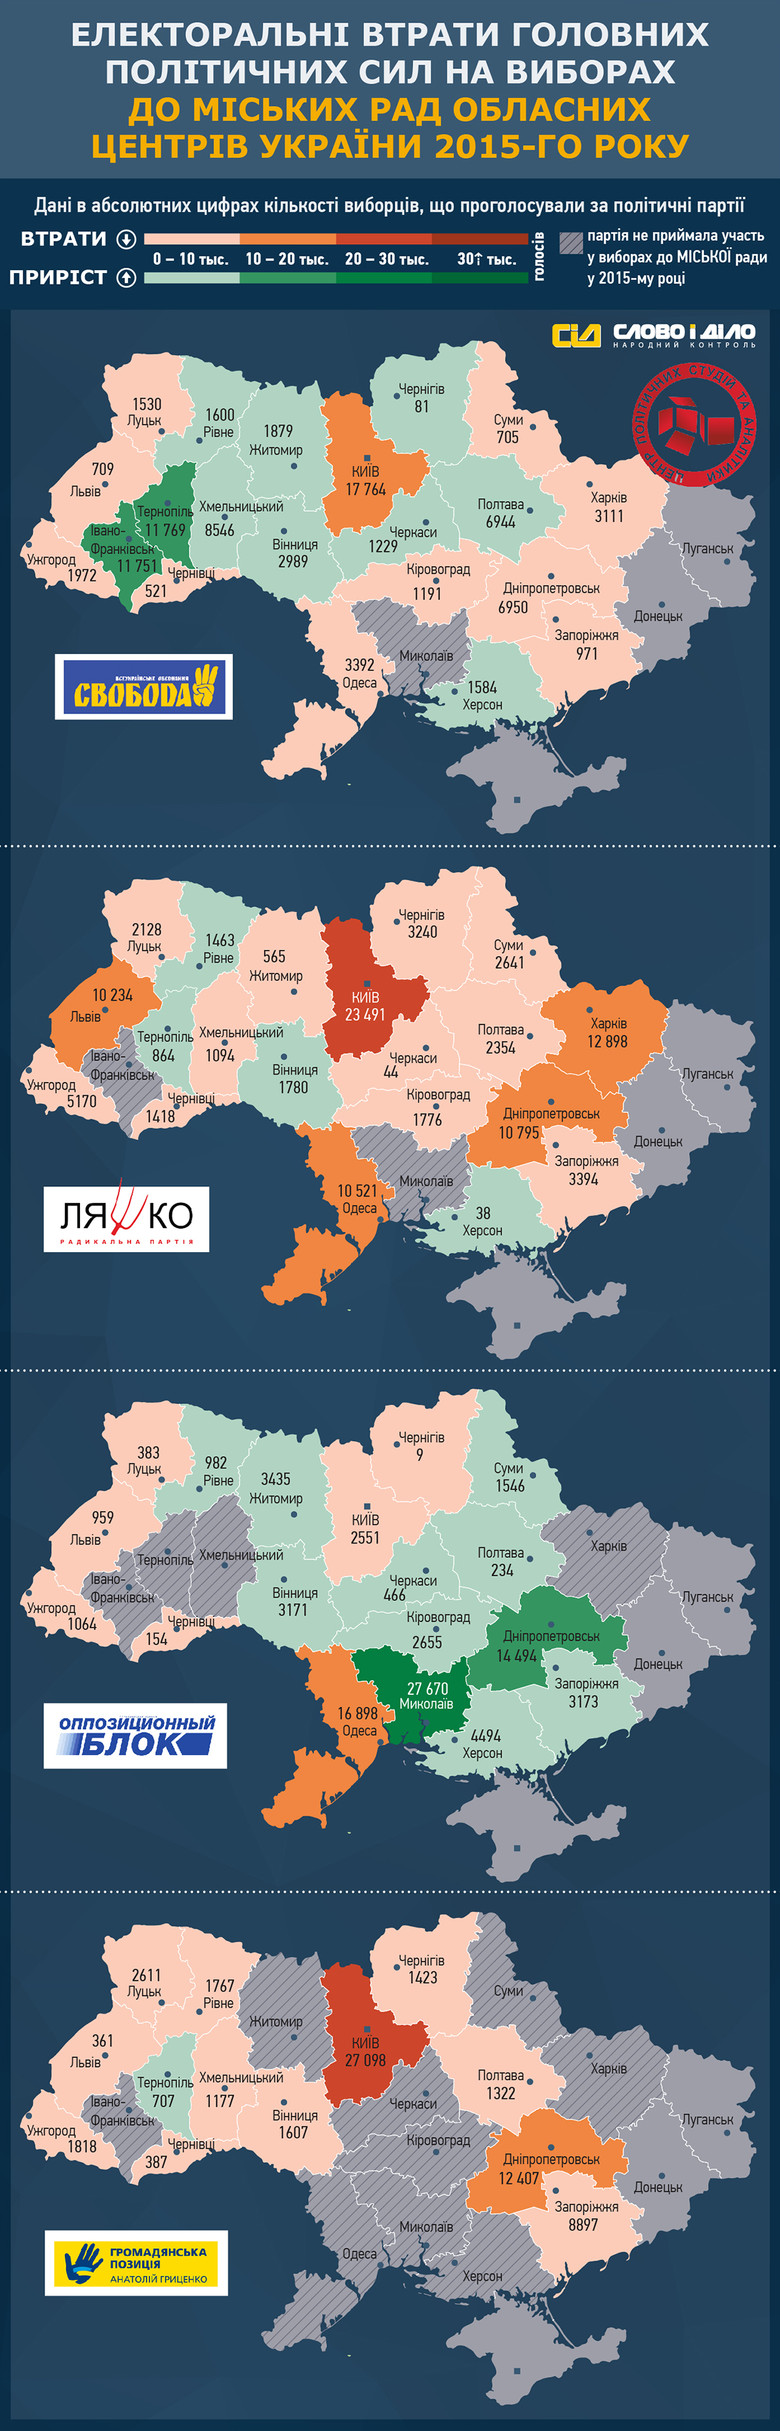 «Слово и Дело» совместно с Центром политических студий и аналитики продолжает анализировать результаты местных выборов в Украине насчет количества потерянных голосов партий в областных центрах.